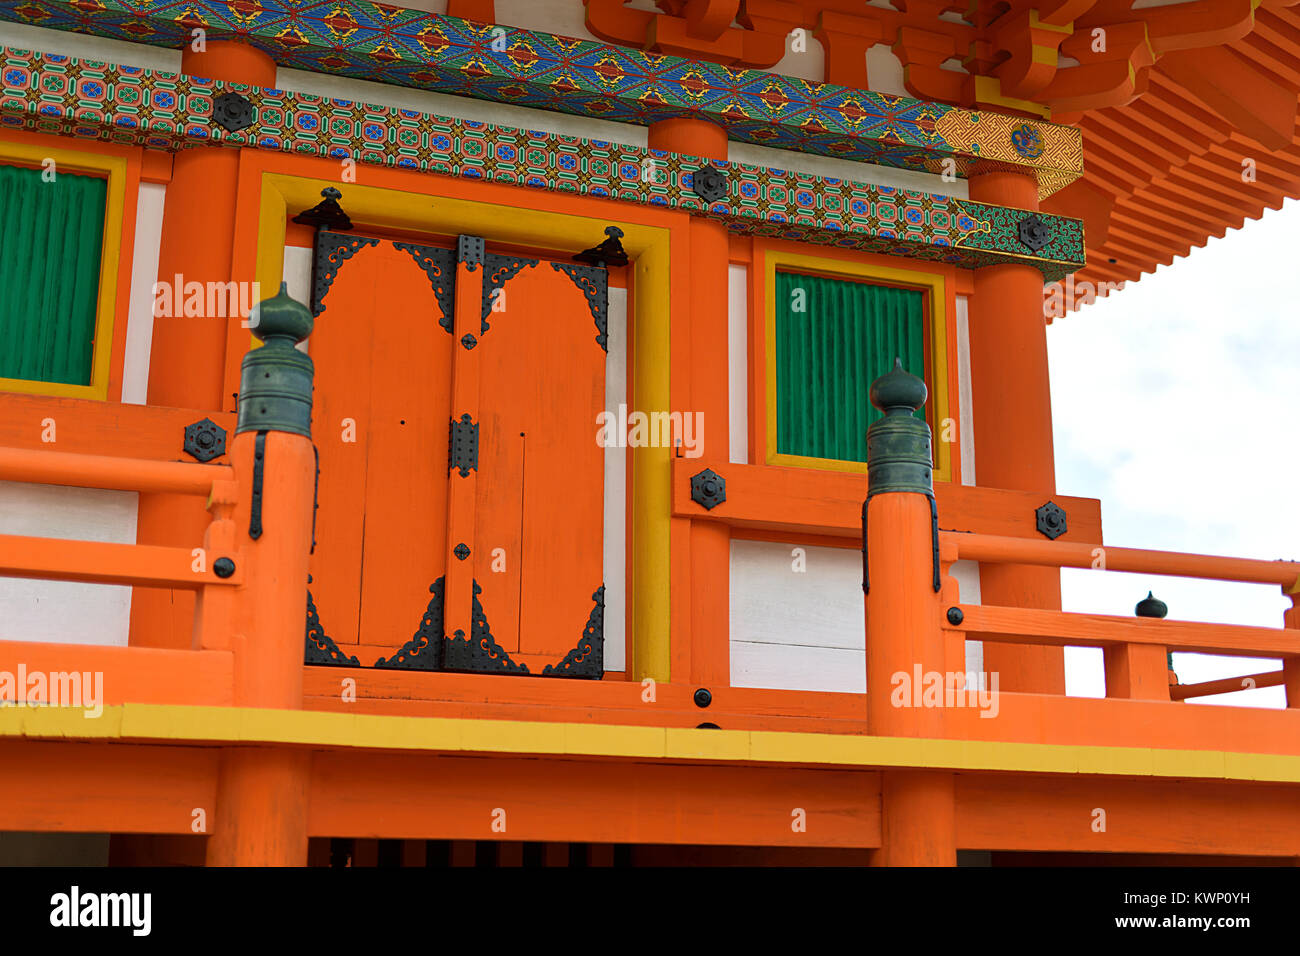 Détail architectural de la pagode à Sanjunoto Buddhist Temple Kiyomizu-dera peint en orange vif avec des ornements colorés. Kyoto, Japon. Banque D'Images